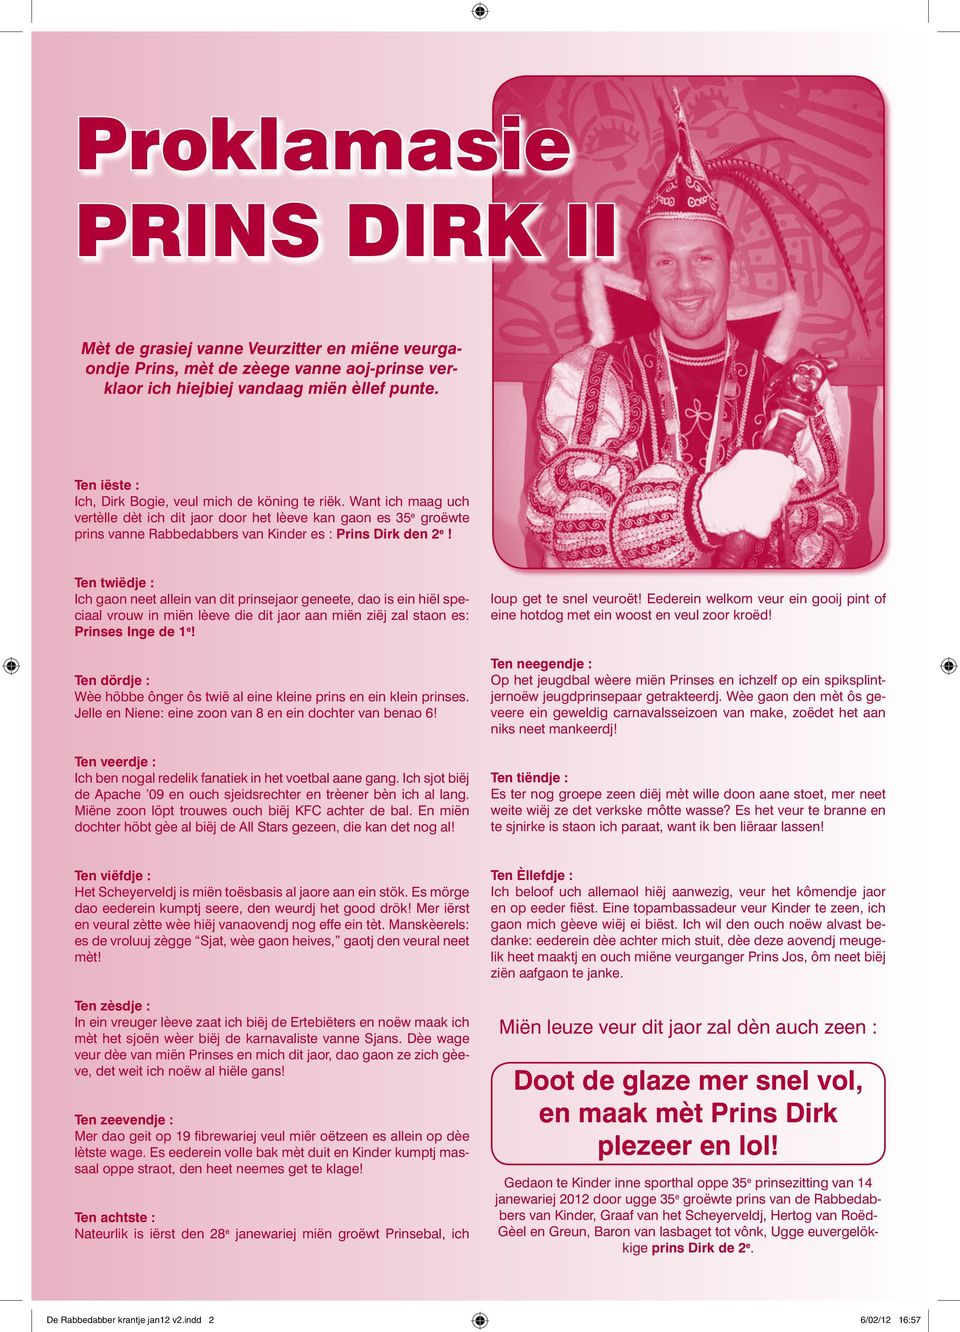 Want ich maag uch vertèlle dèt ich dit jaor door het lèeve kan gaon es 35 e groëwte prins vanne Rabbedabbers van Kinder es : Prins Dirk den 2 e!